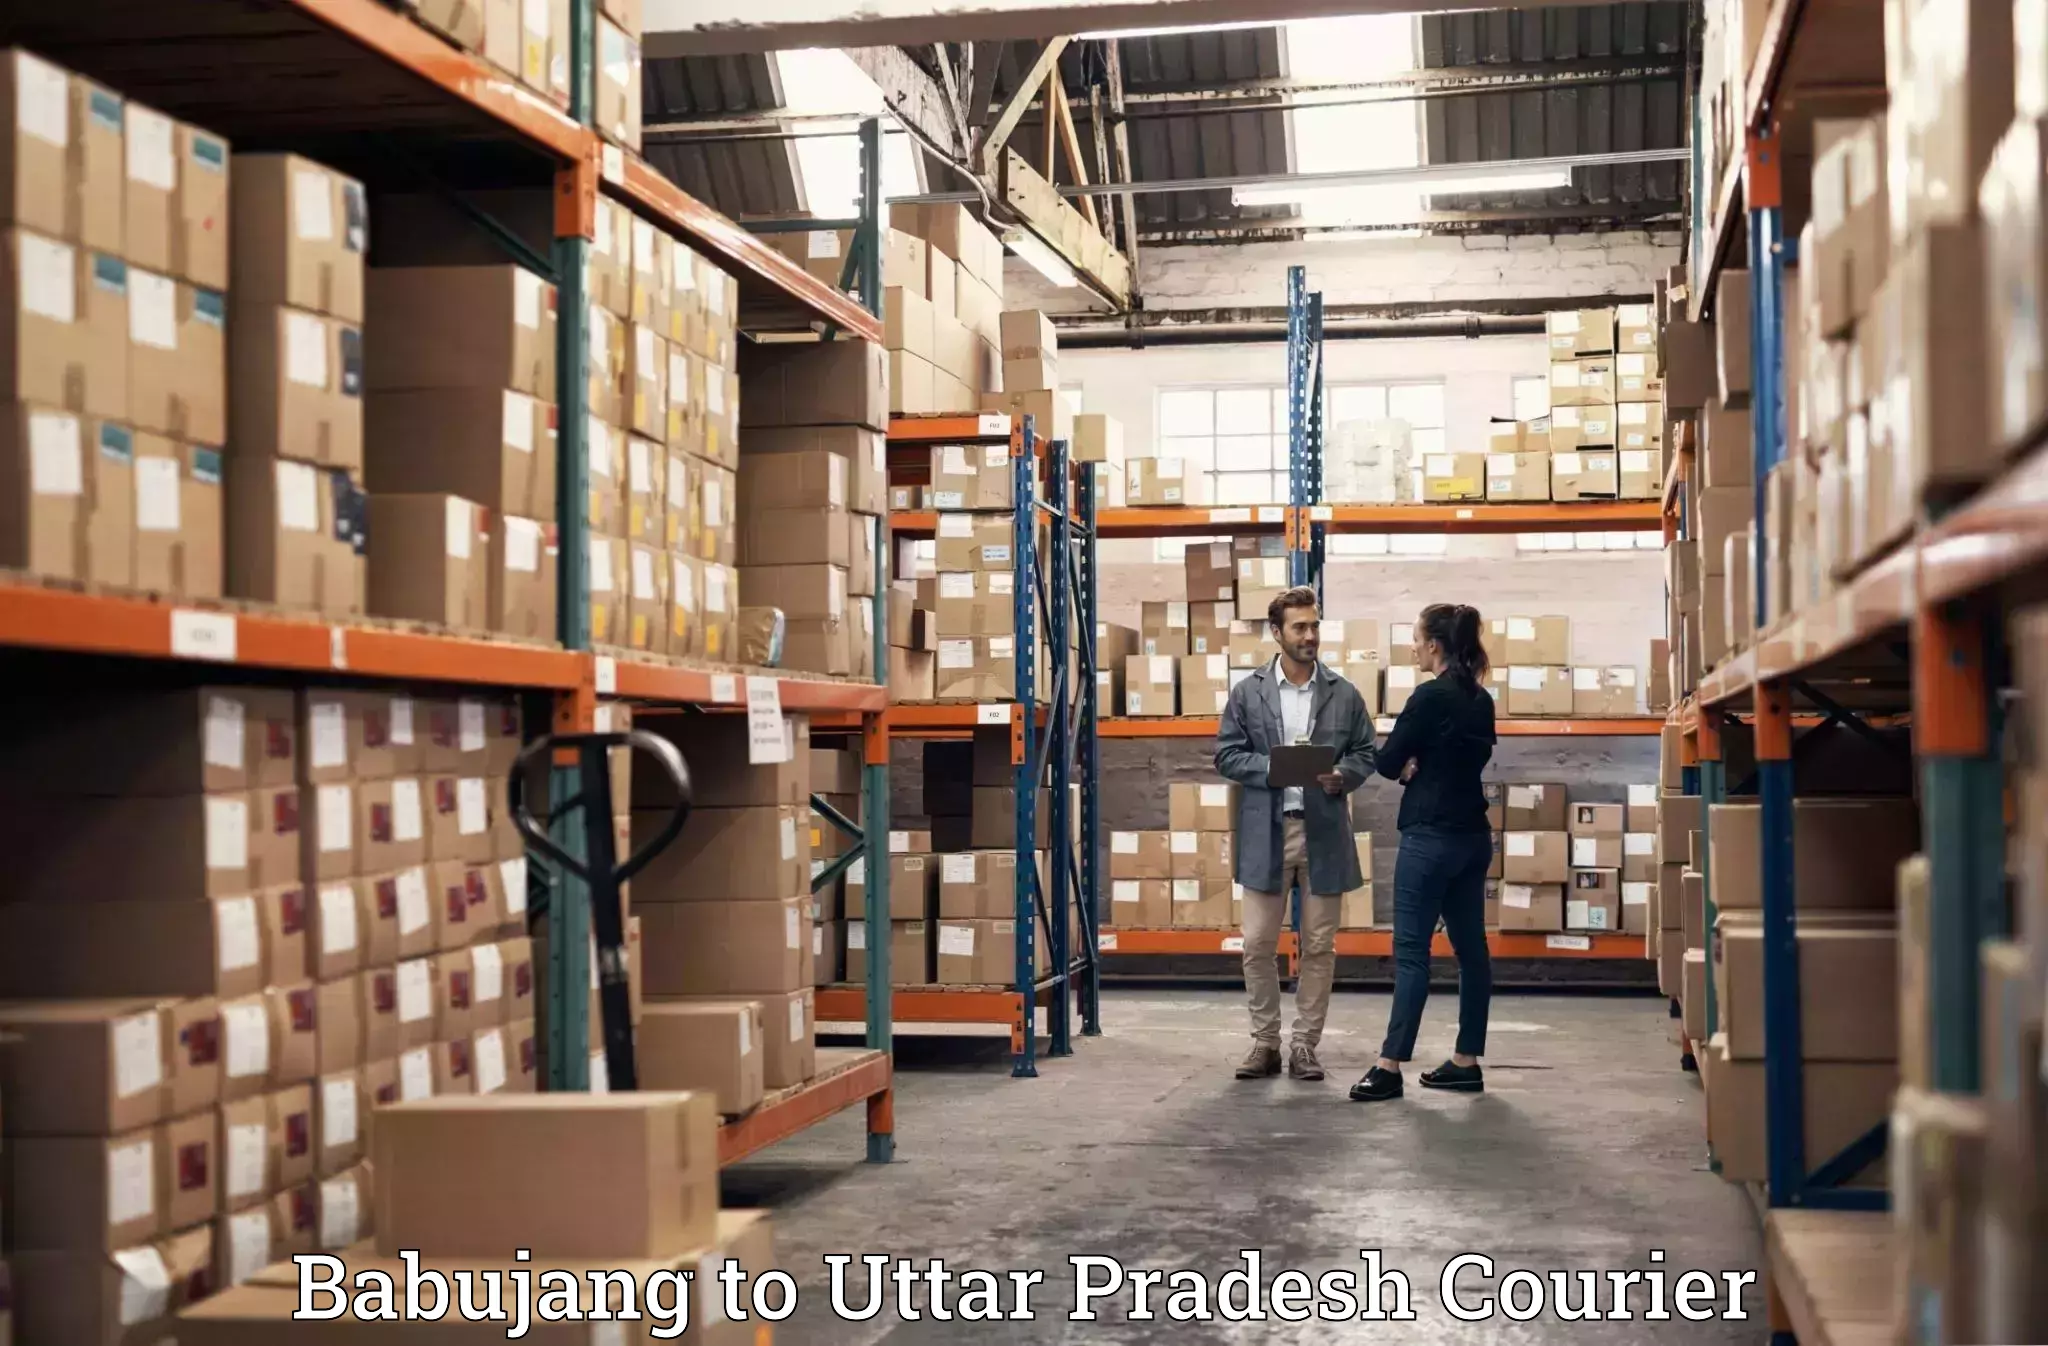 Professional moving company Babujang to Mauranipur